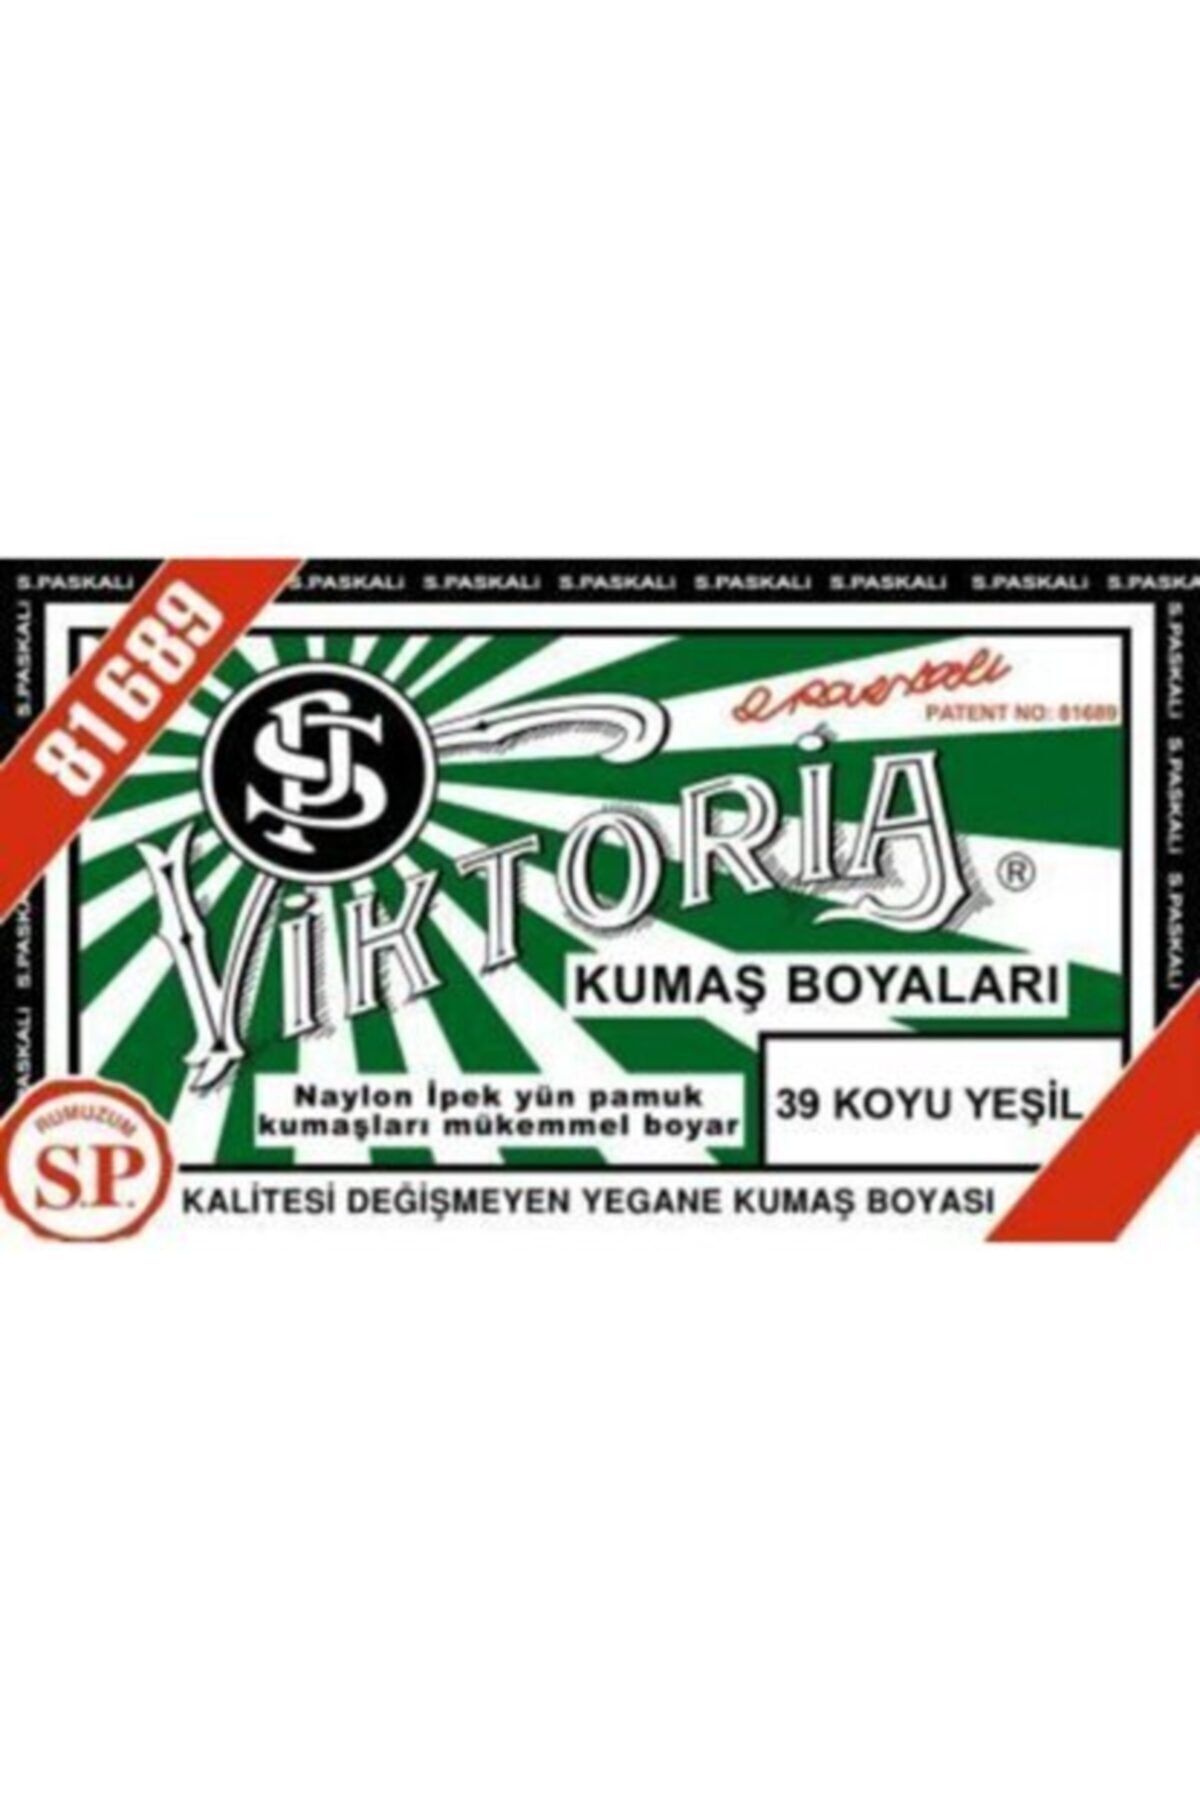 Viktoria 39 Koyu Yeşil Kumaş Boyası Kot-naylon-pamuk-yün-ipek